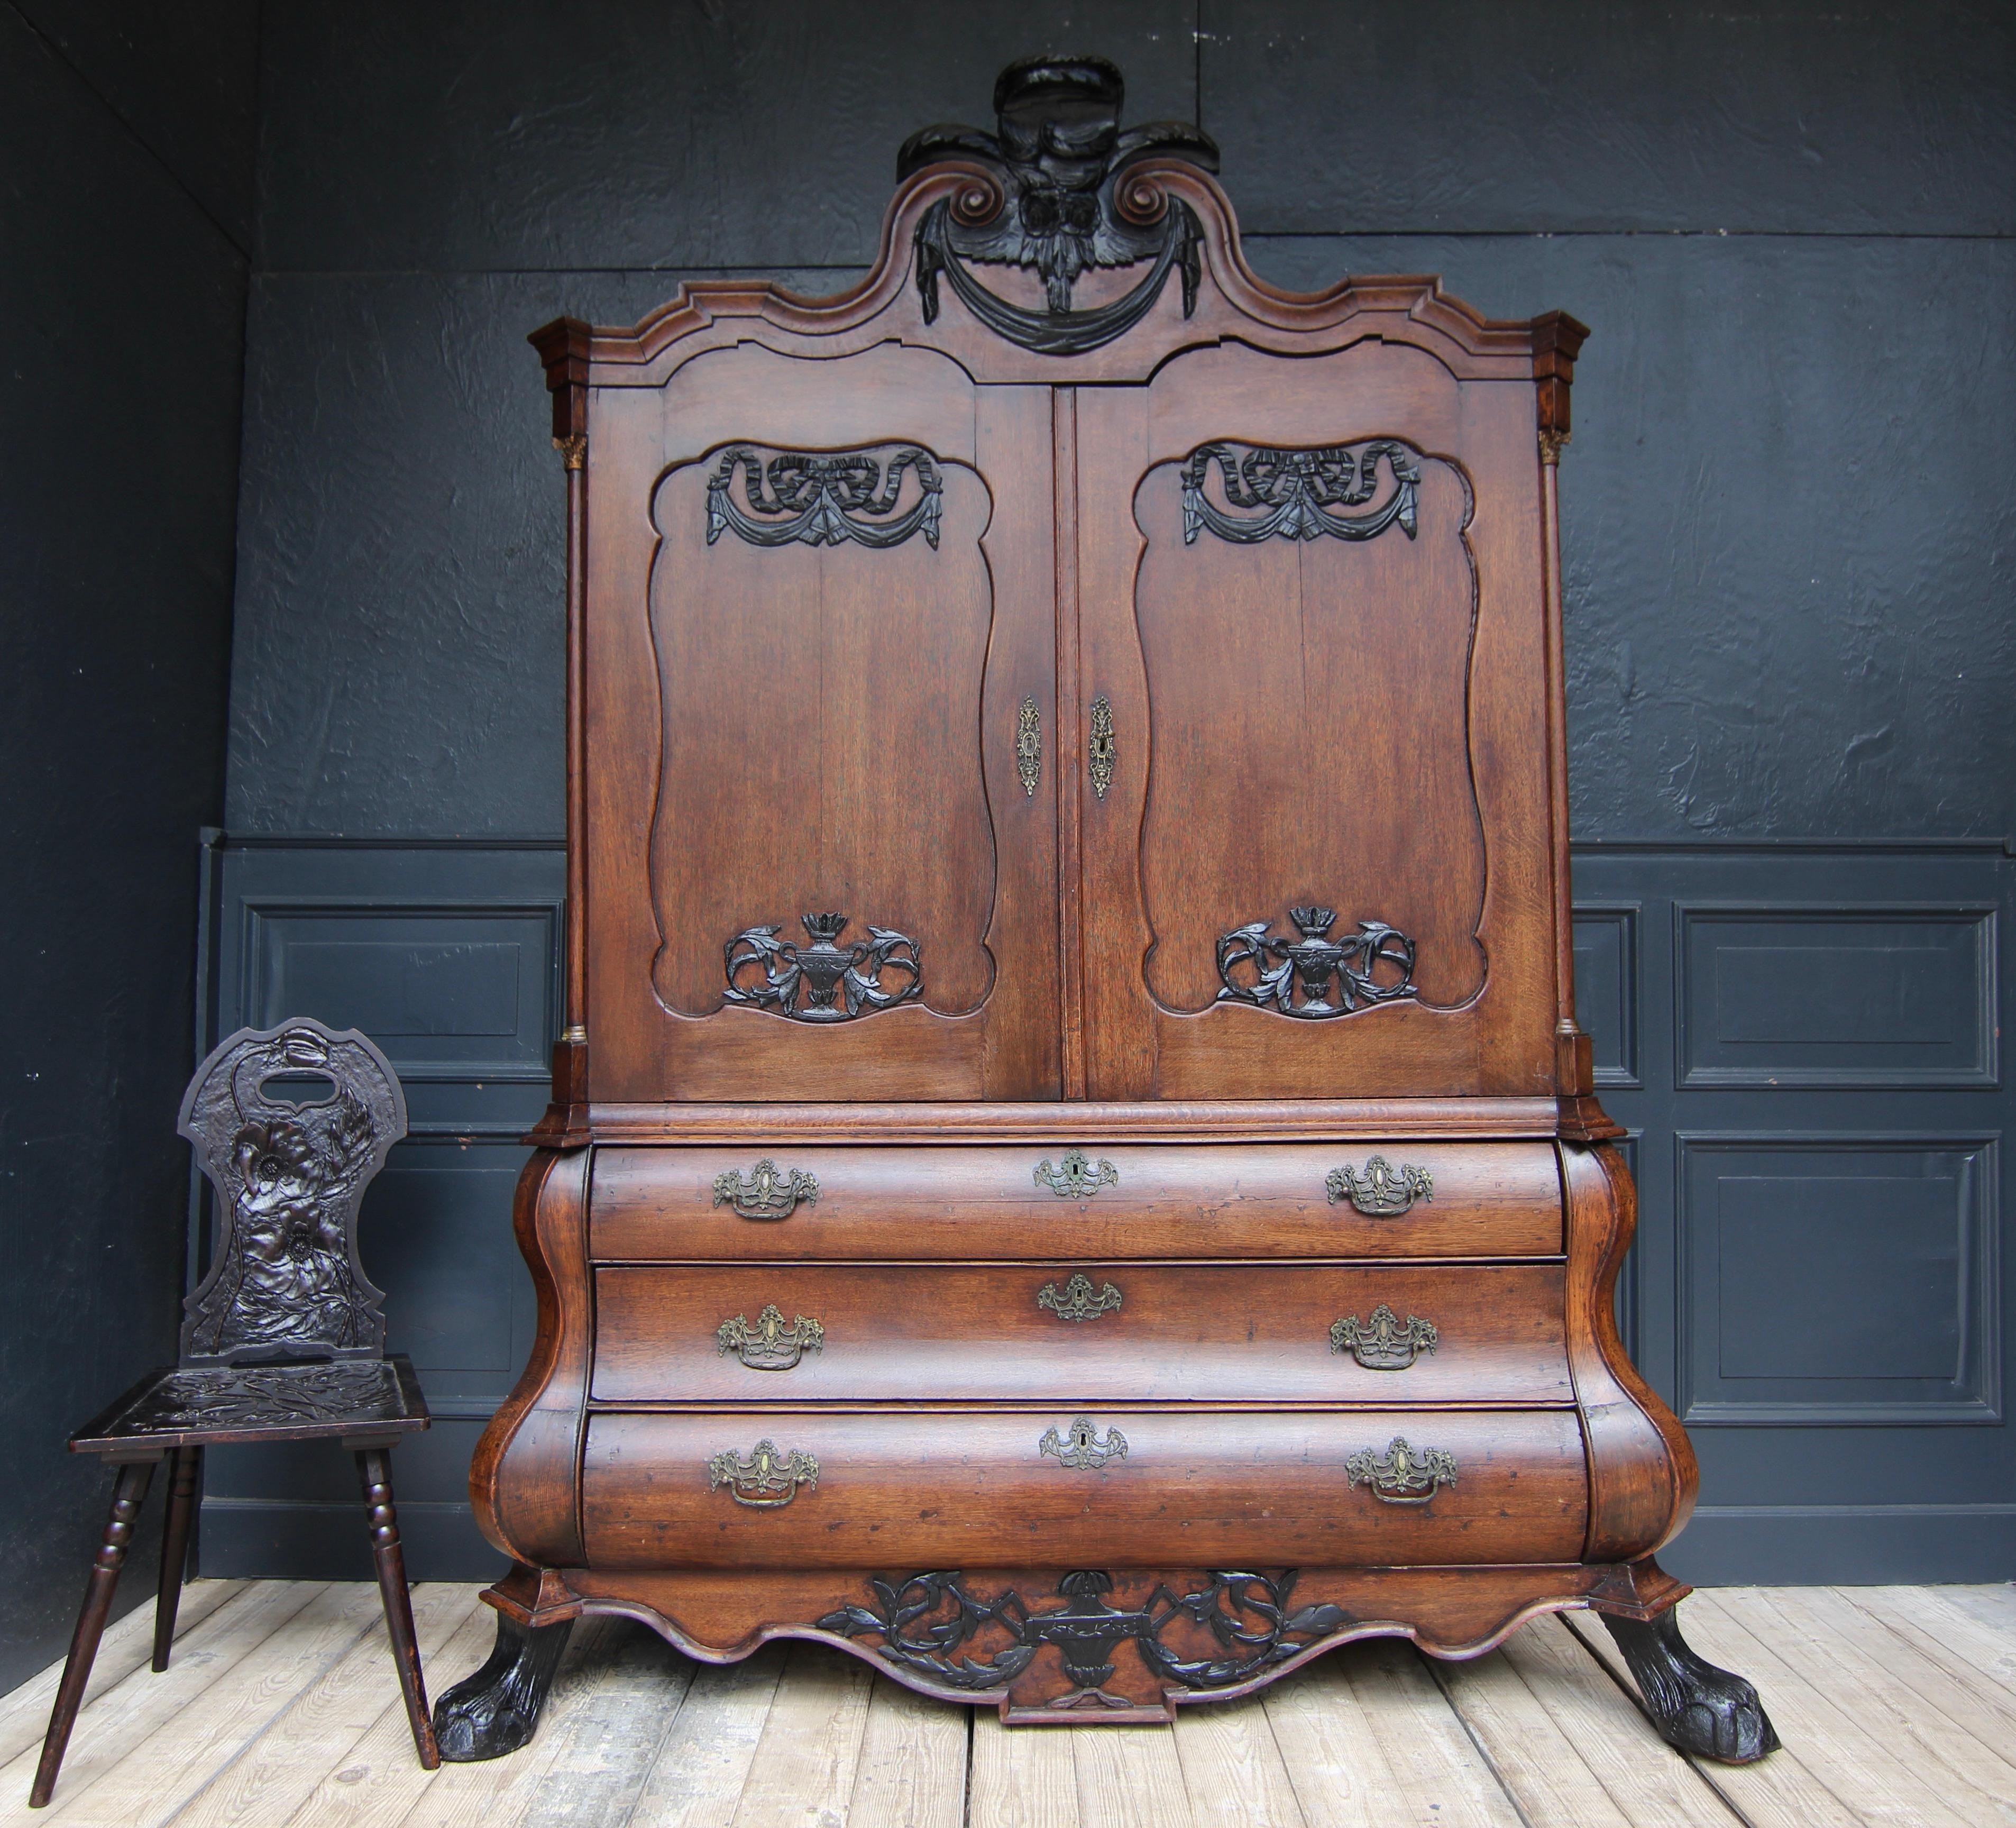 Armoire ou presse à linge baroque hollandaise de la 2e moitié du 18e siècle. Fabriqué en chêne, il est rehaussé d'une décoration sculptée ébonisée et de ferrures en bronze moulé.

Le meuble se compose d'une base de coffre à trois baies avec une